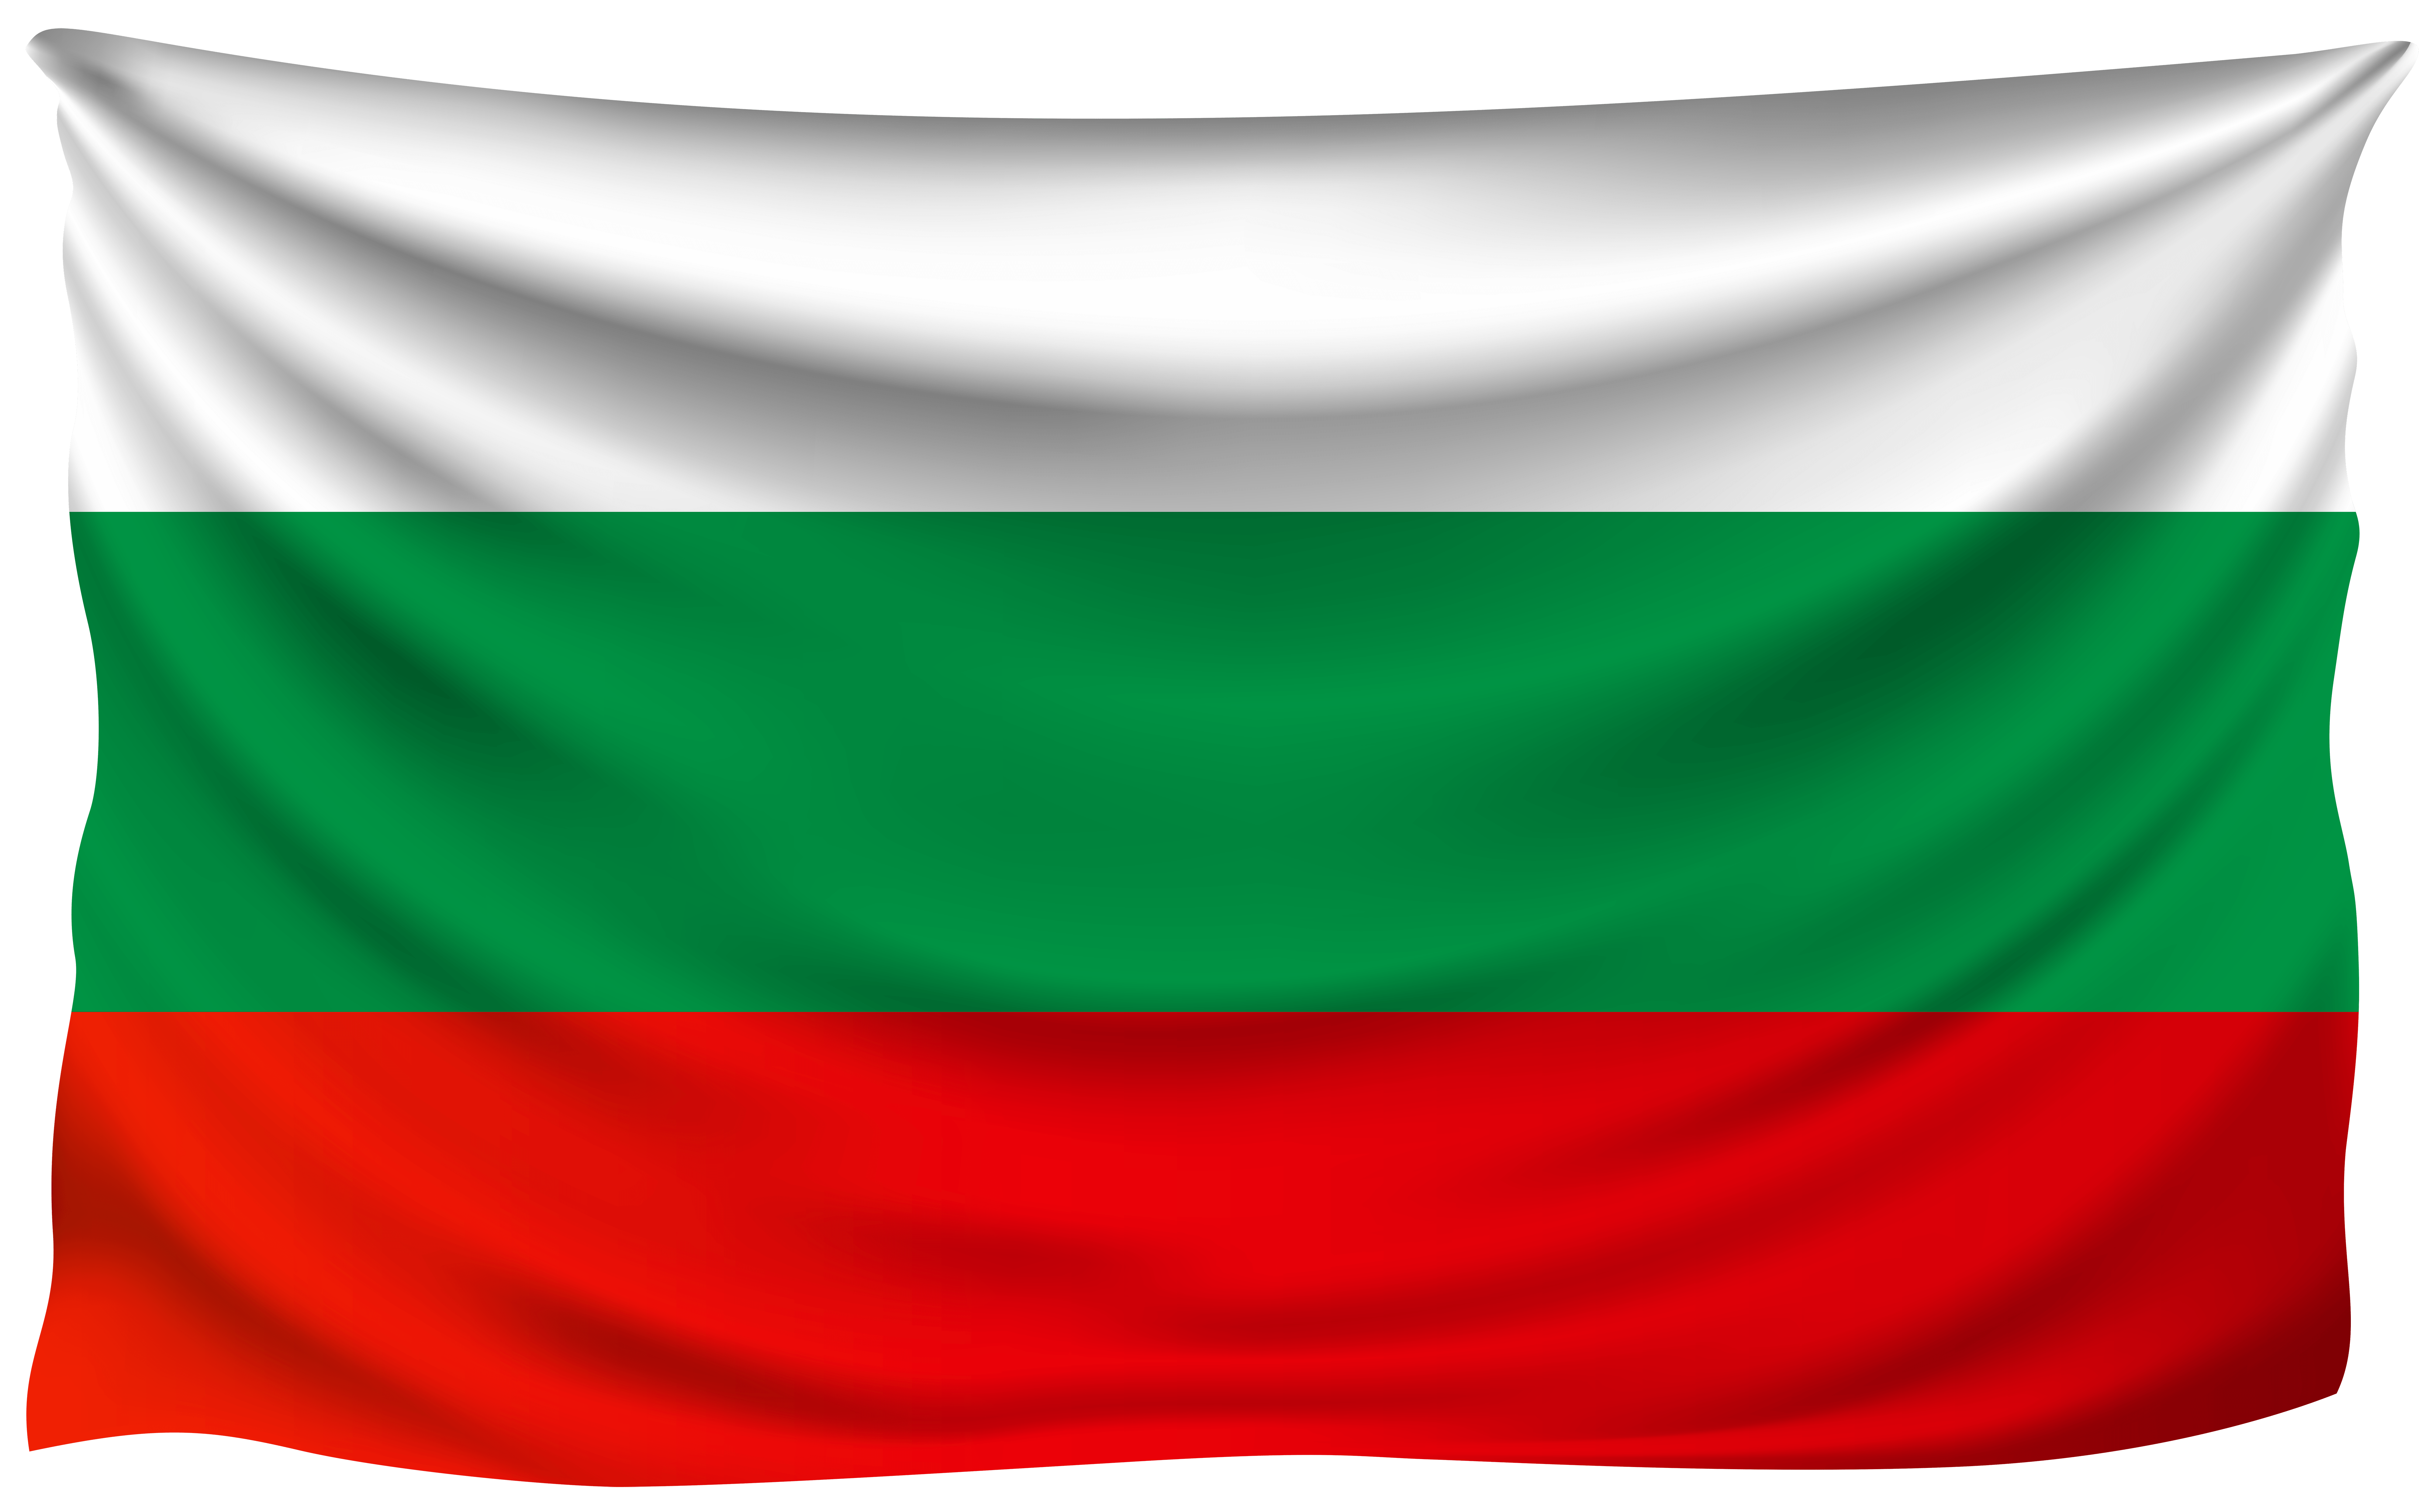 Bulgaria Wrinkled Flag Quality Image